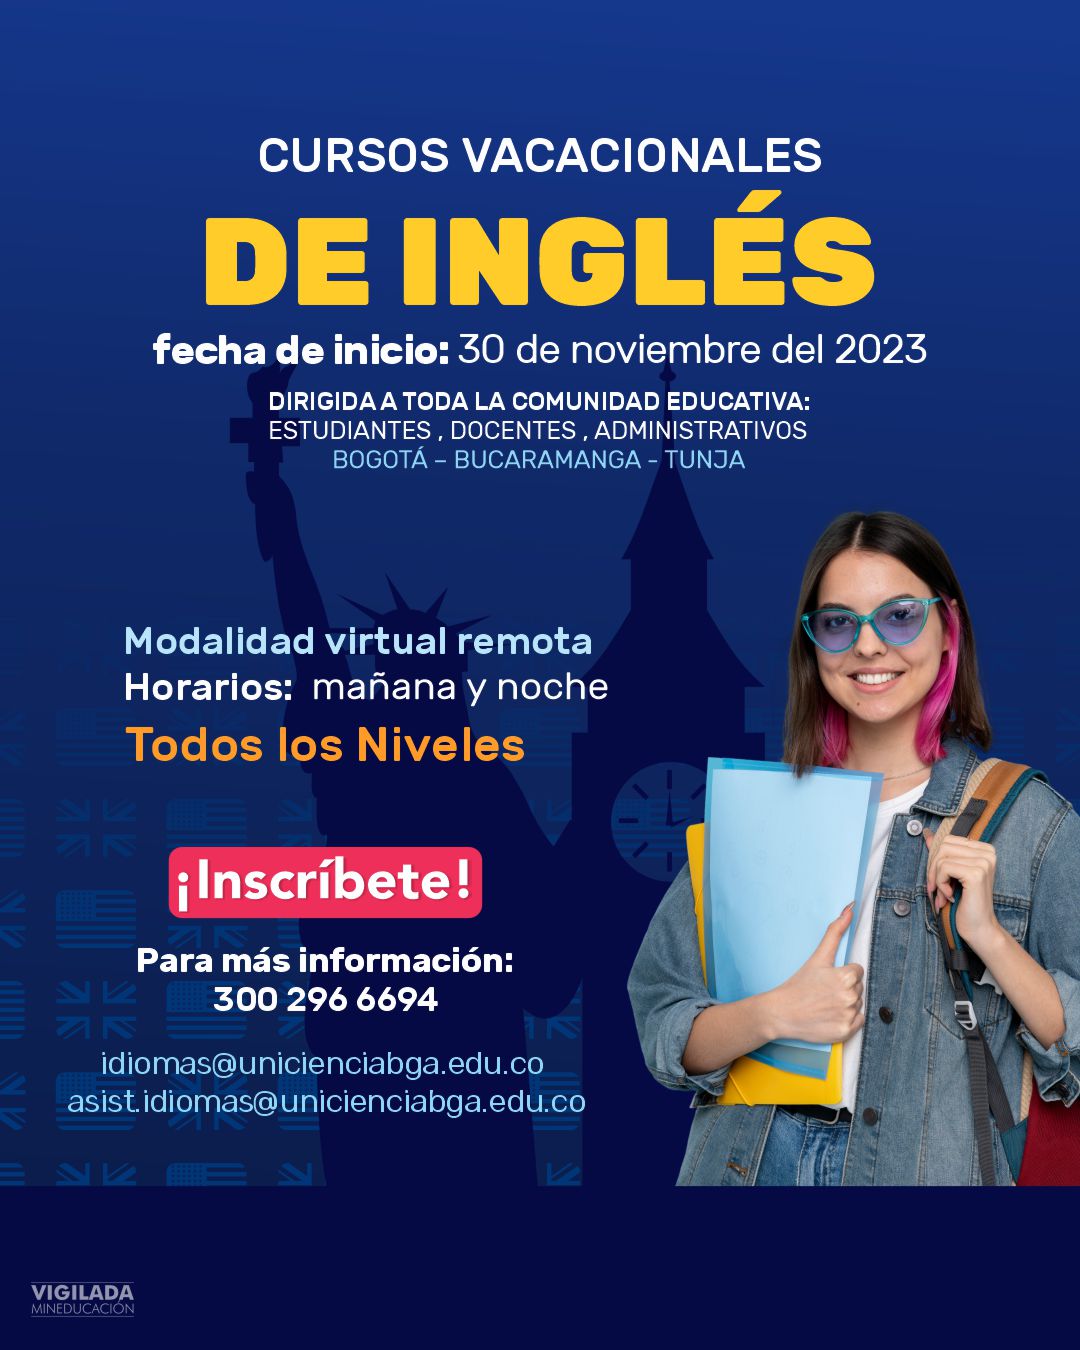 Cursos vacacionales de inglés - Noviembre/Diciembre 2023 UNICIENCIA